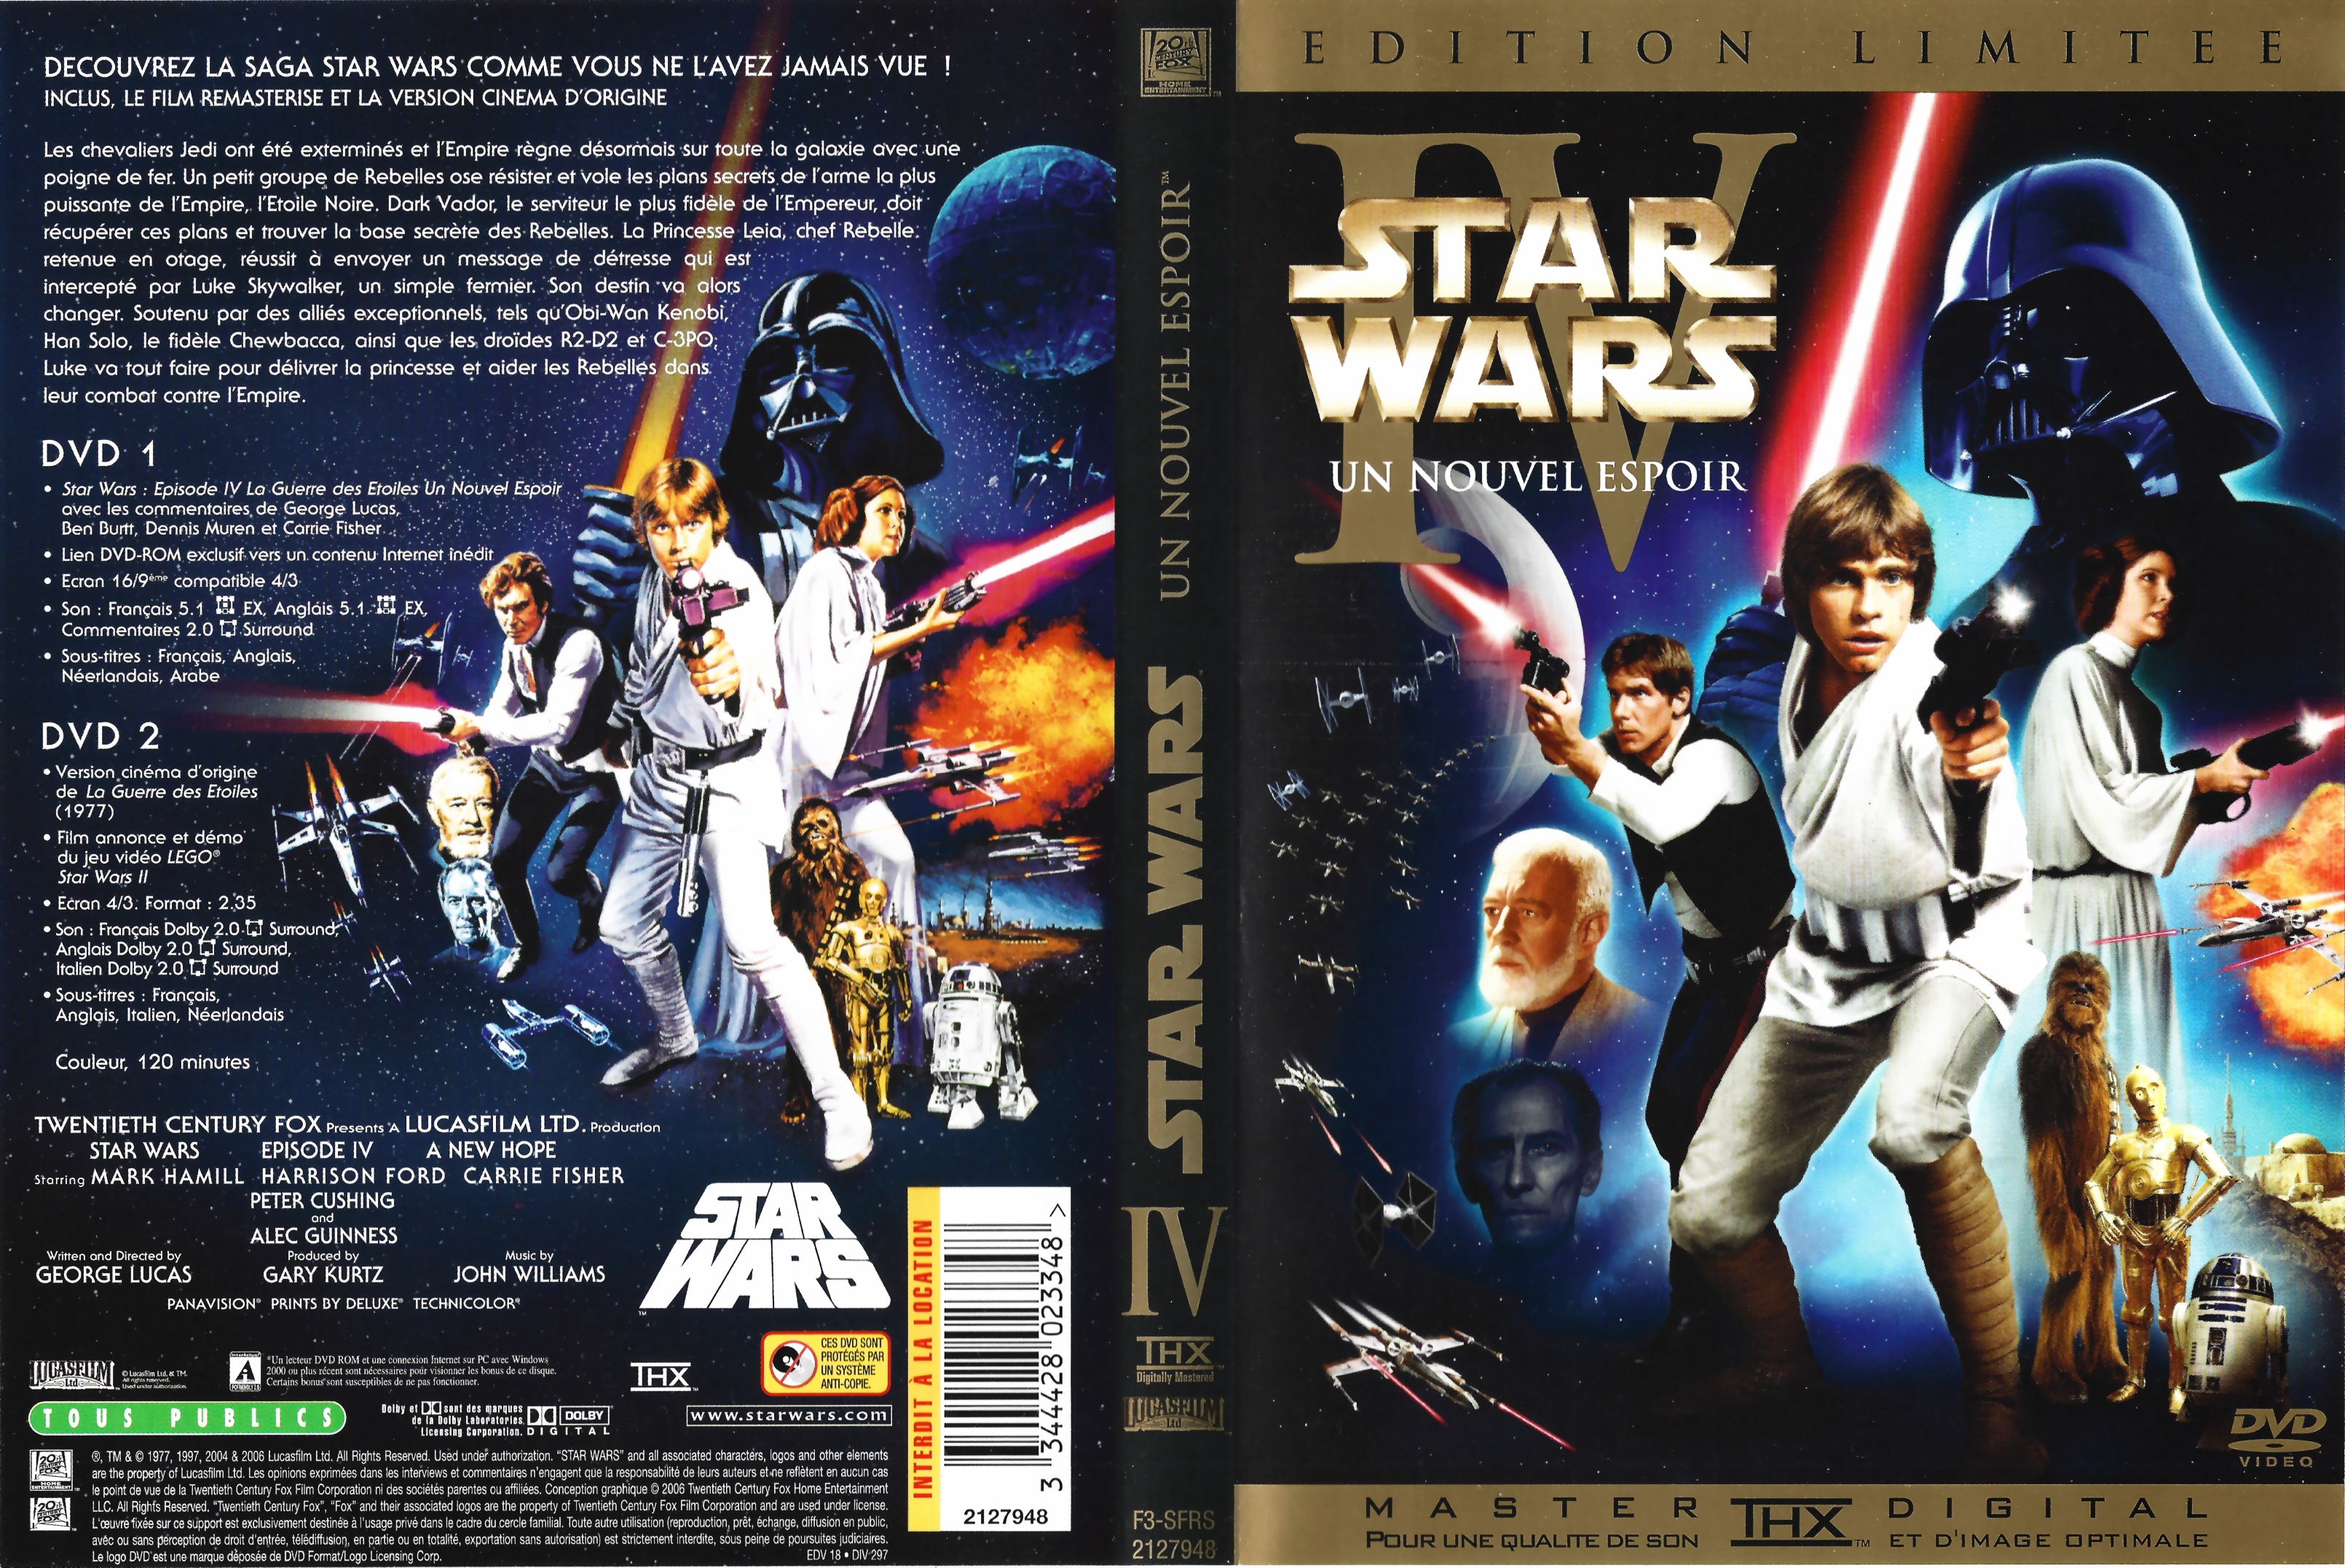 Jaquette DVD Star wars un nouvel espoir